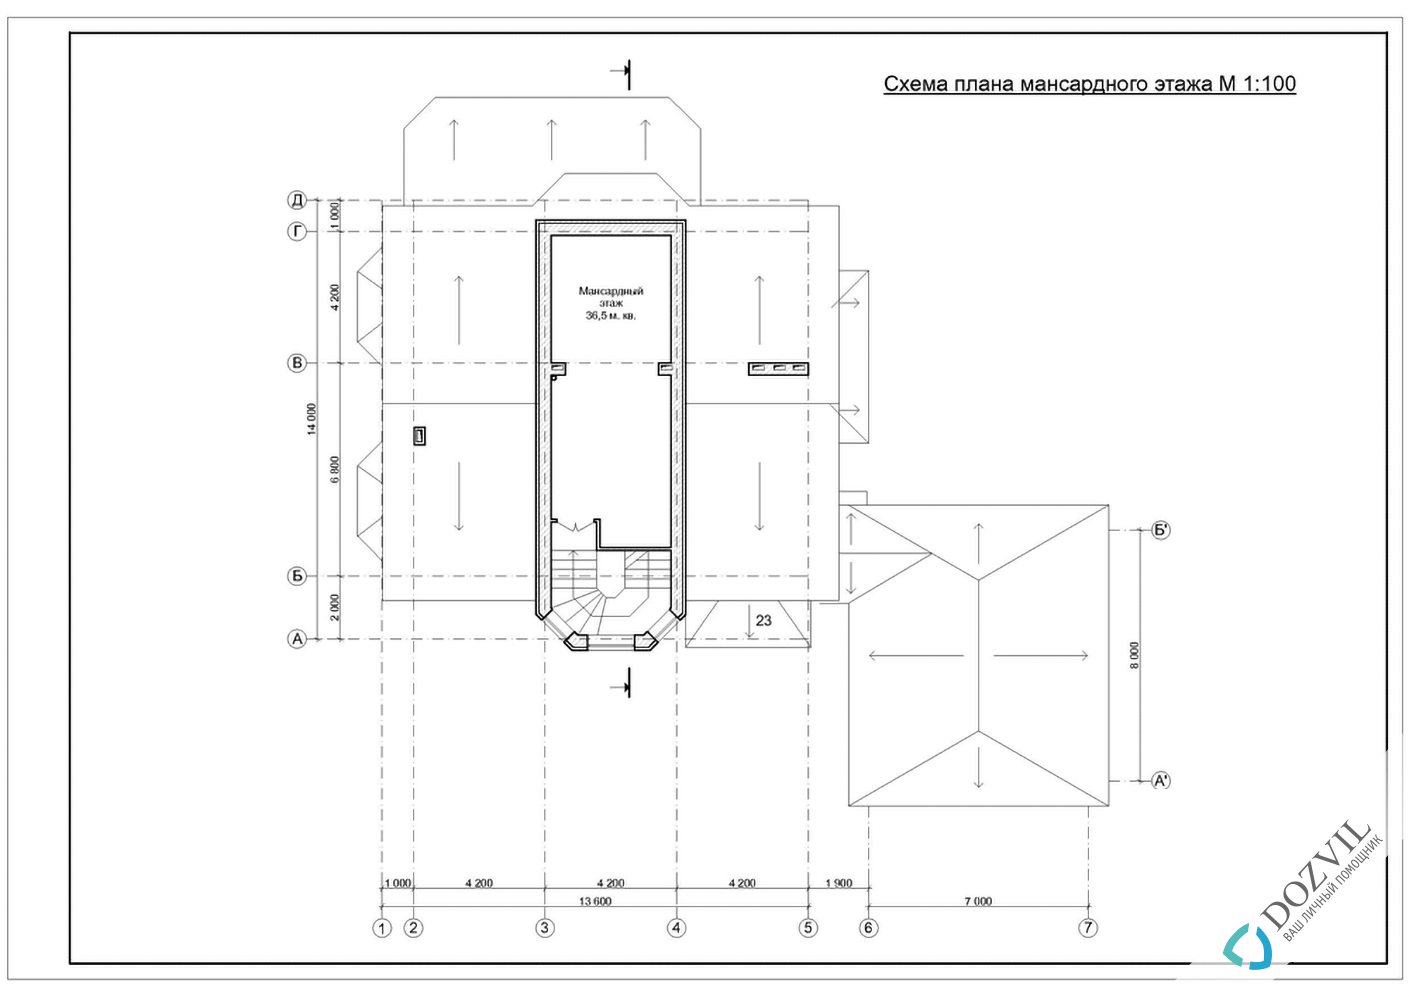 Узаконити реконструкцію > Реконструкція будинку з загальною площею до 500 квадратних метрів > 2 етап - Розробка ескізу намірів будівництва